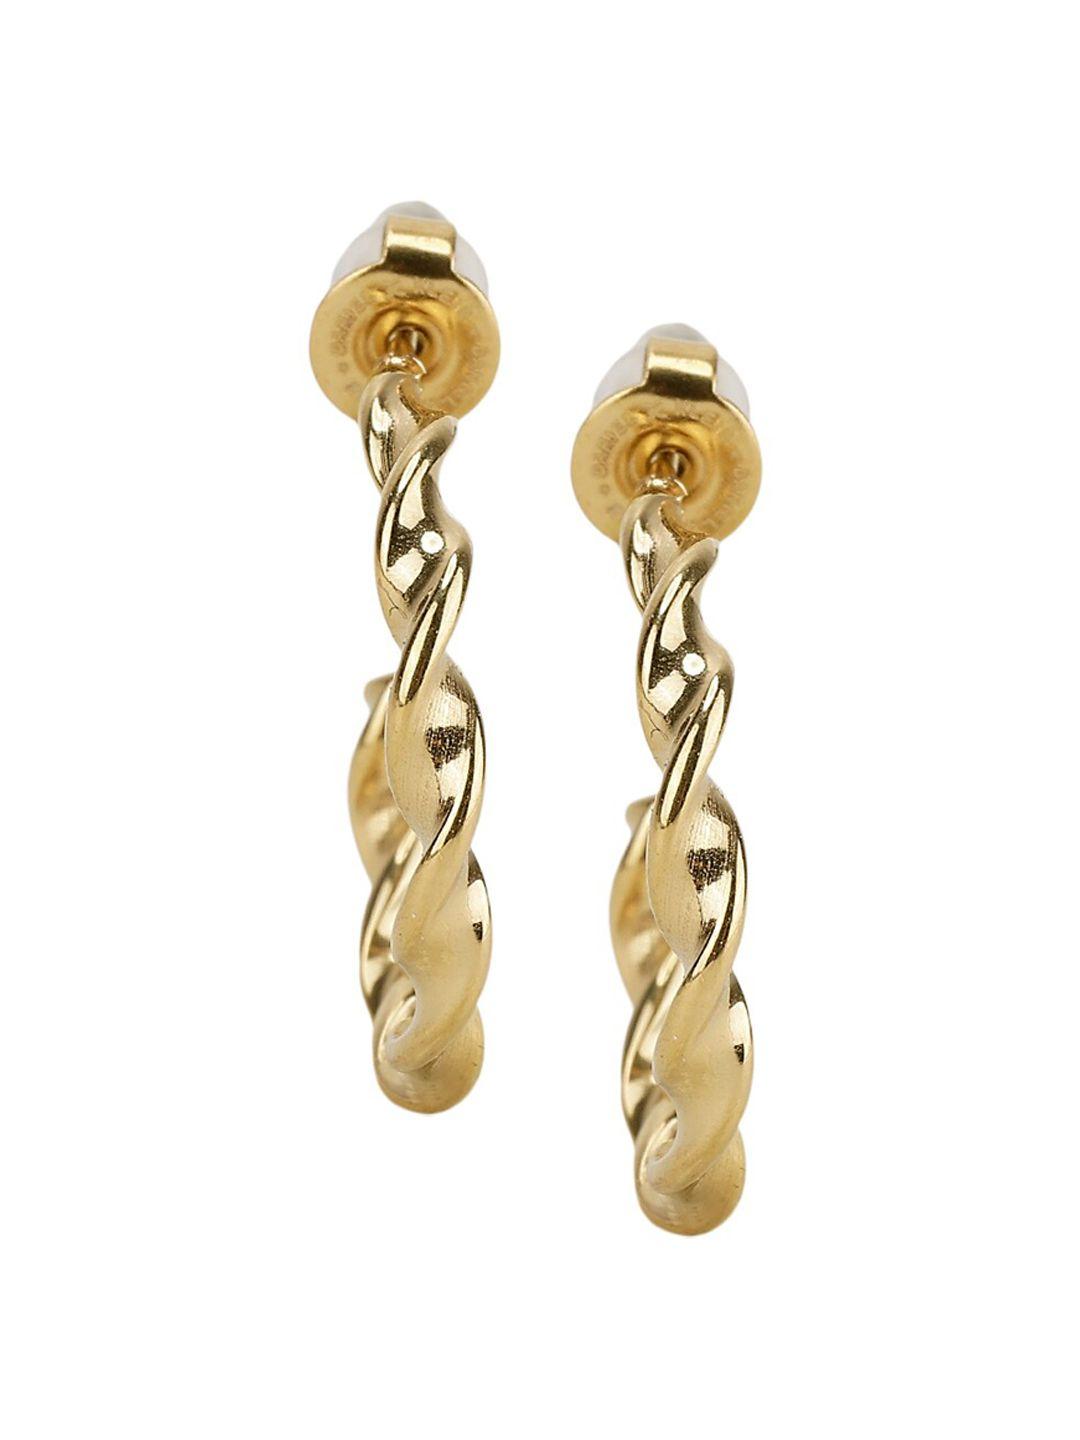 daniel klein contemporary half hoop earrings